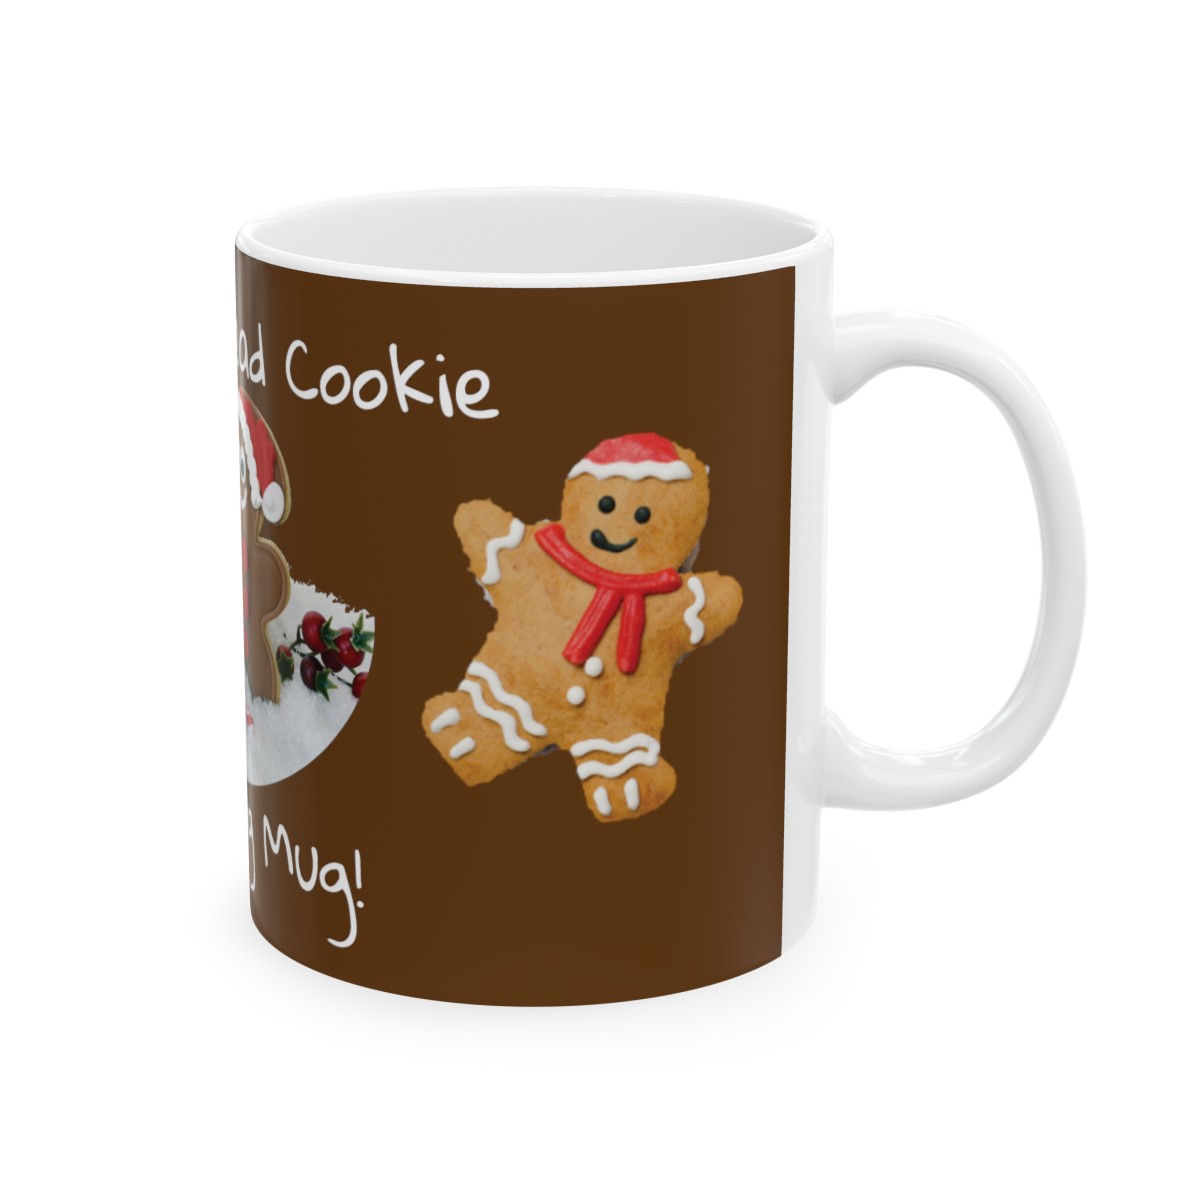 Whimsical Wonderland: My Gingerbread Cookie Decorating Mug! - Ceramic Mug 11oz product thumbnail image